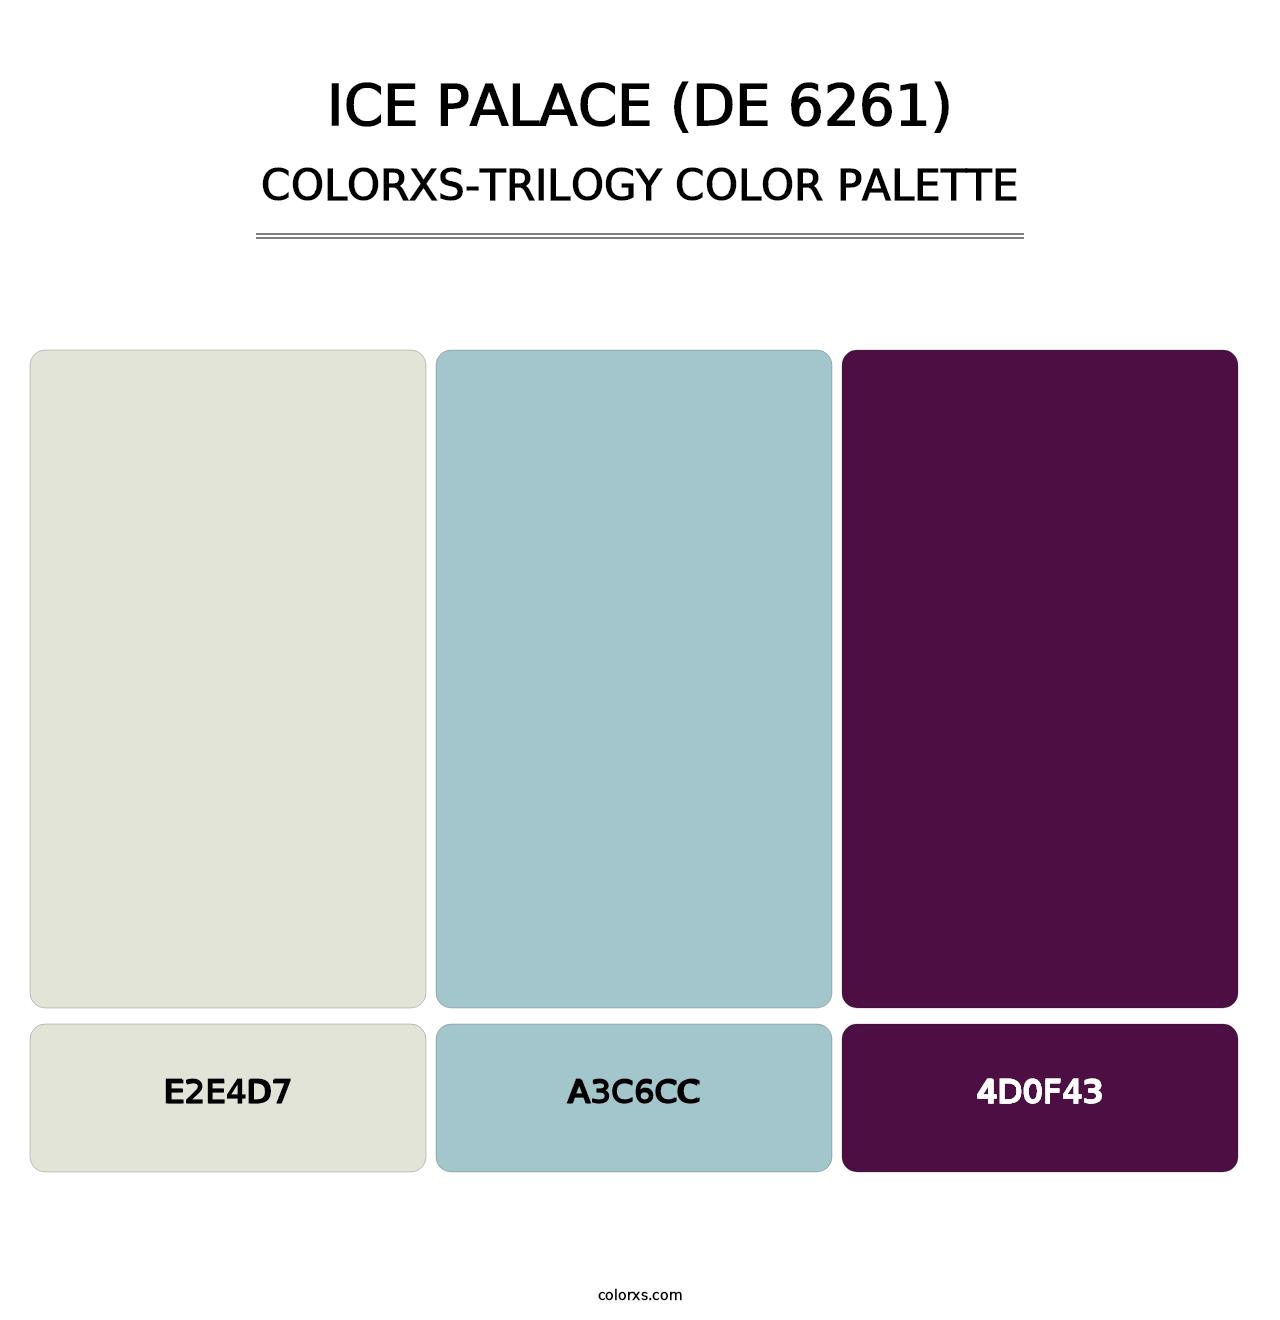 Ice Palace (DE 6261) - Colorxs Trilogy Palette